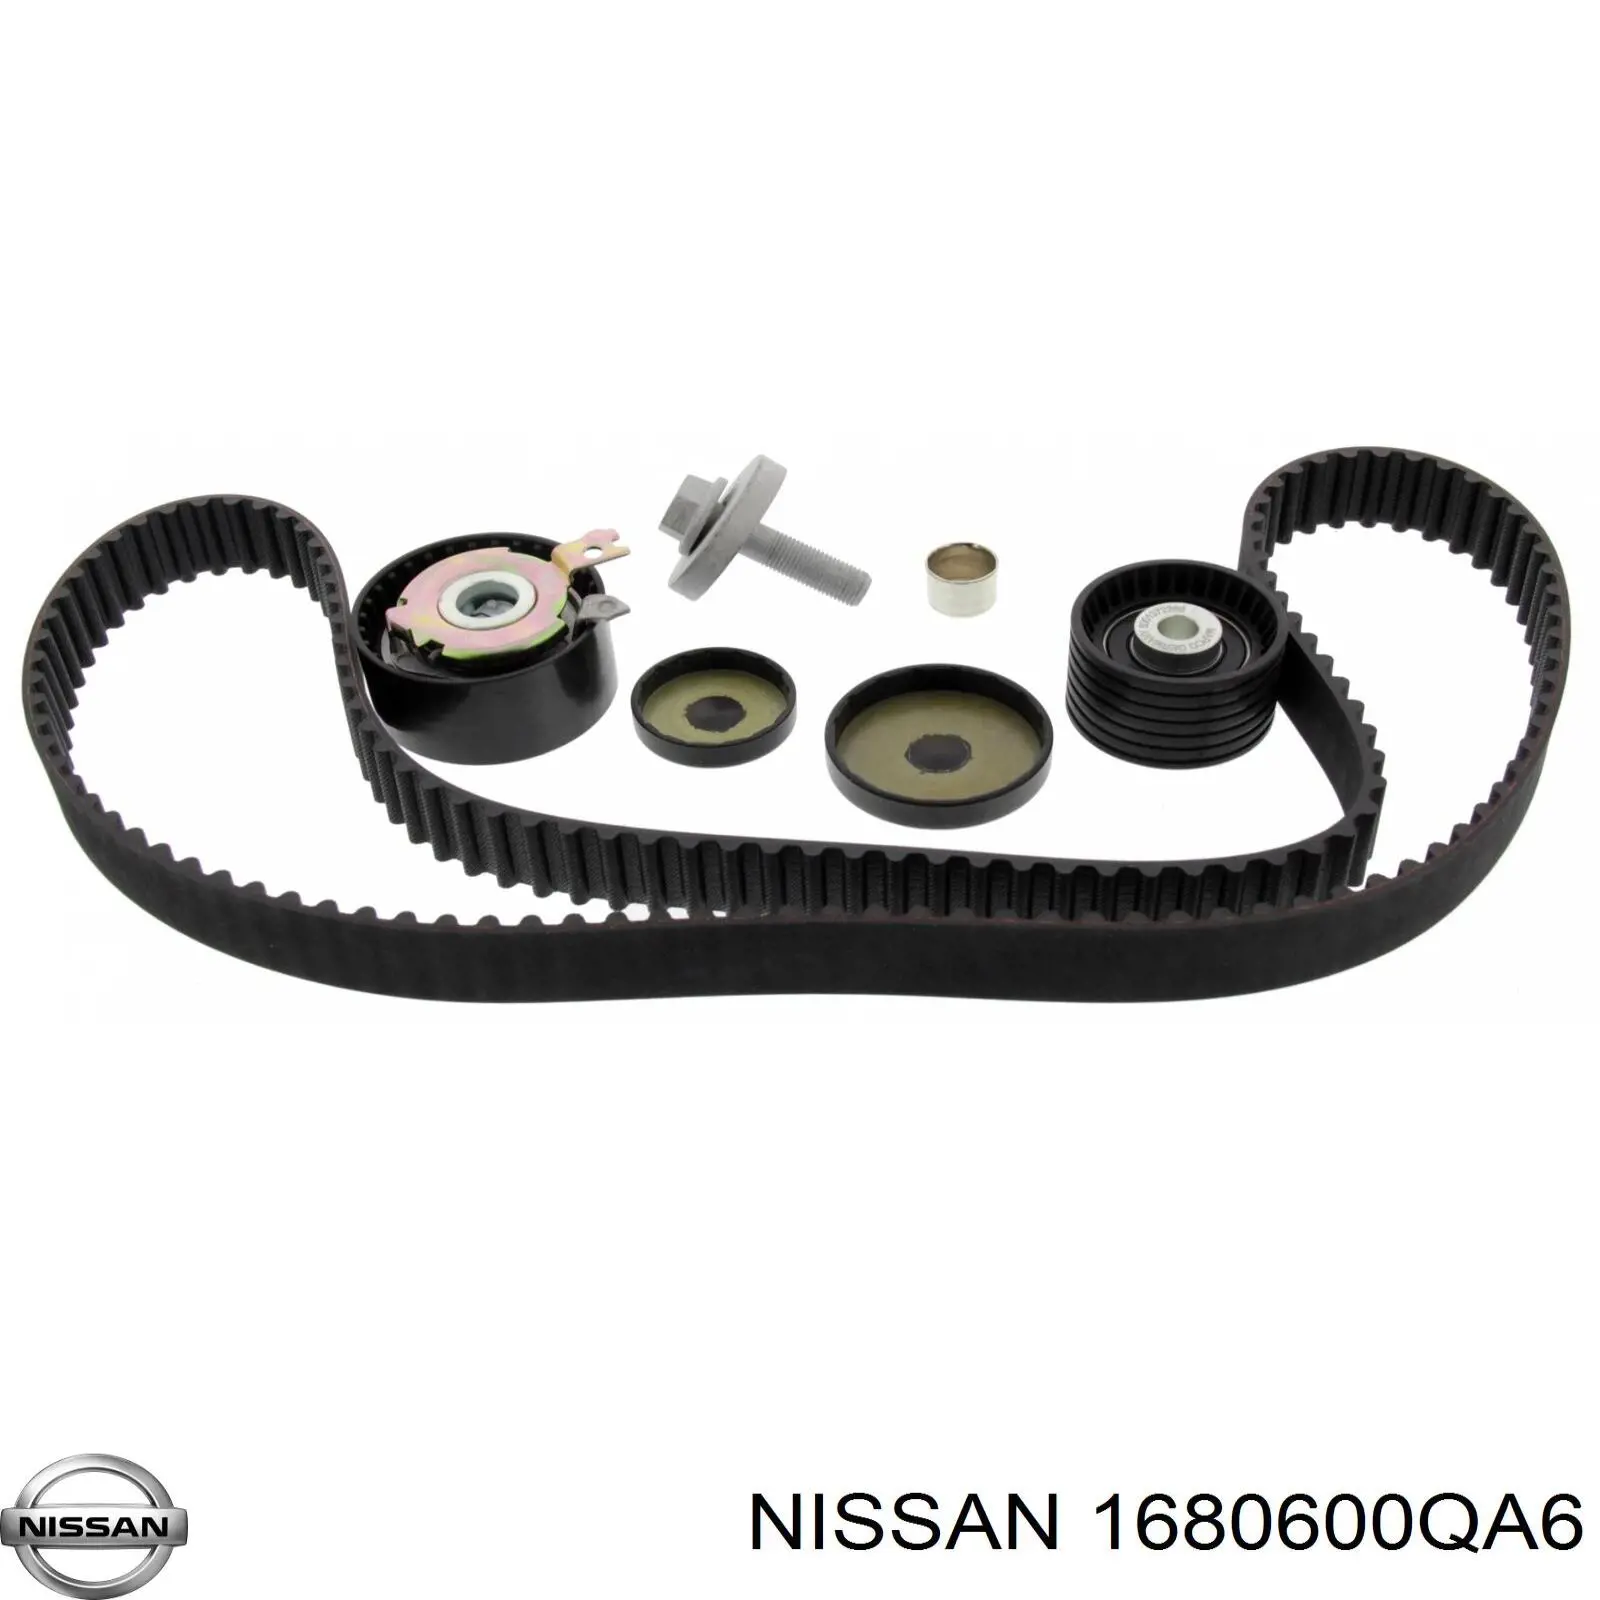 1680600QA6 Nissan kit de correa de distribución